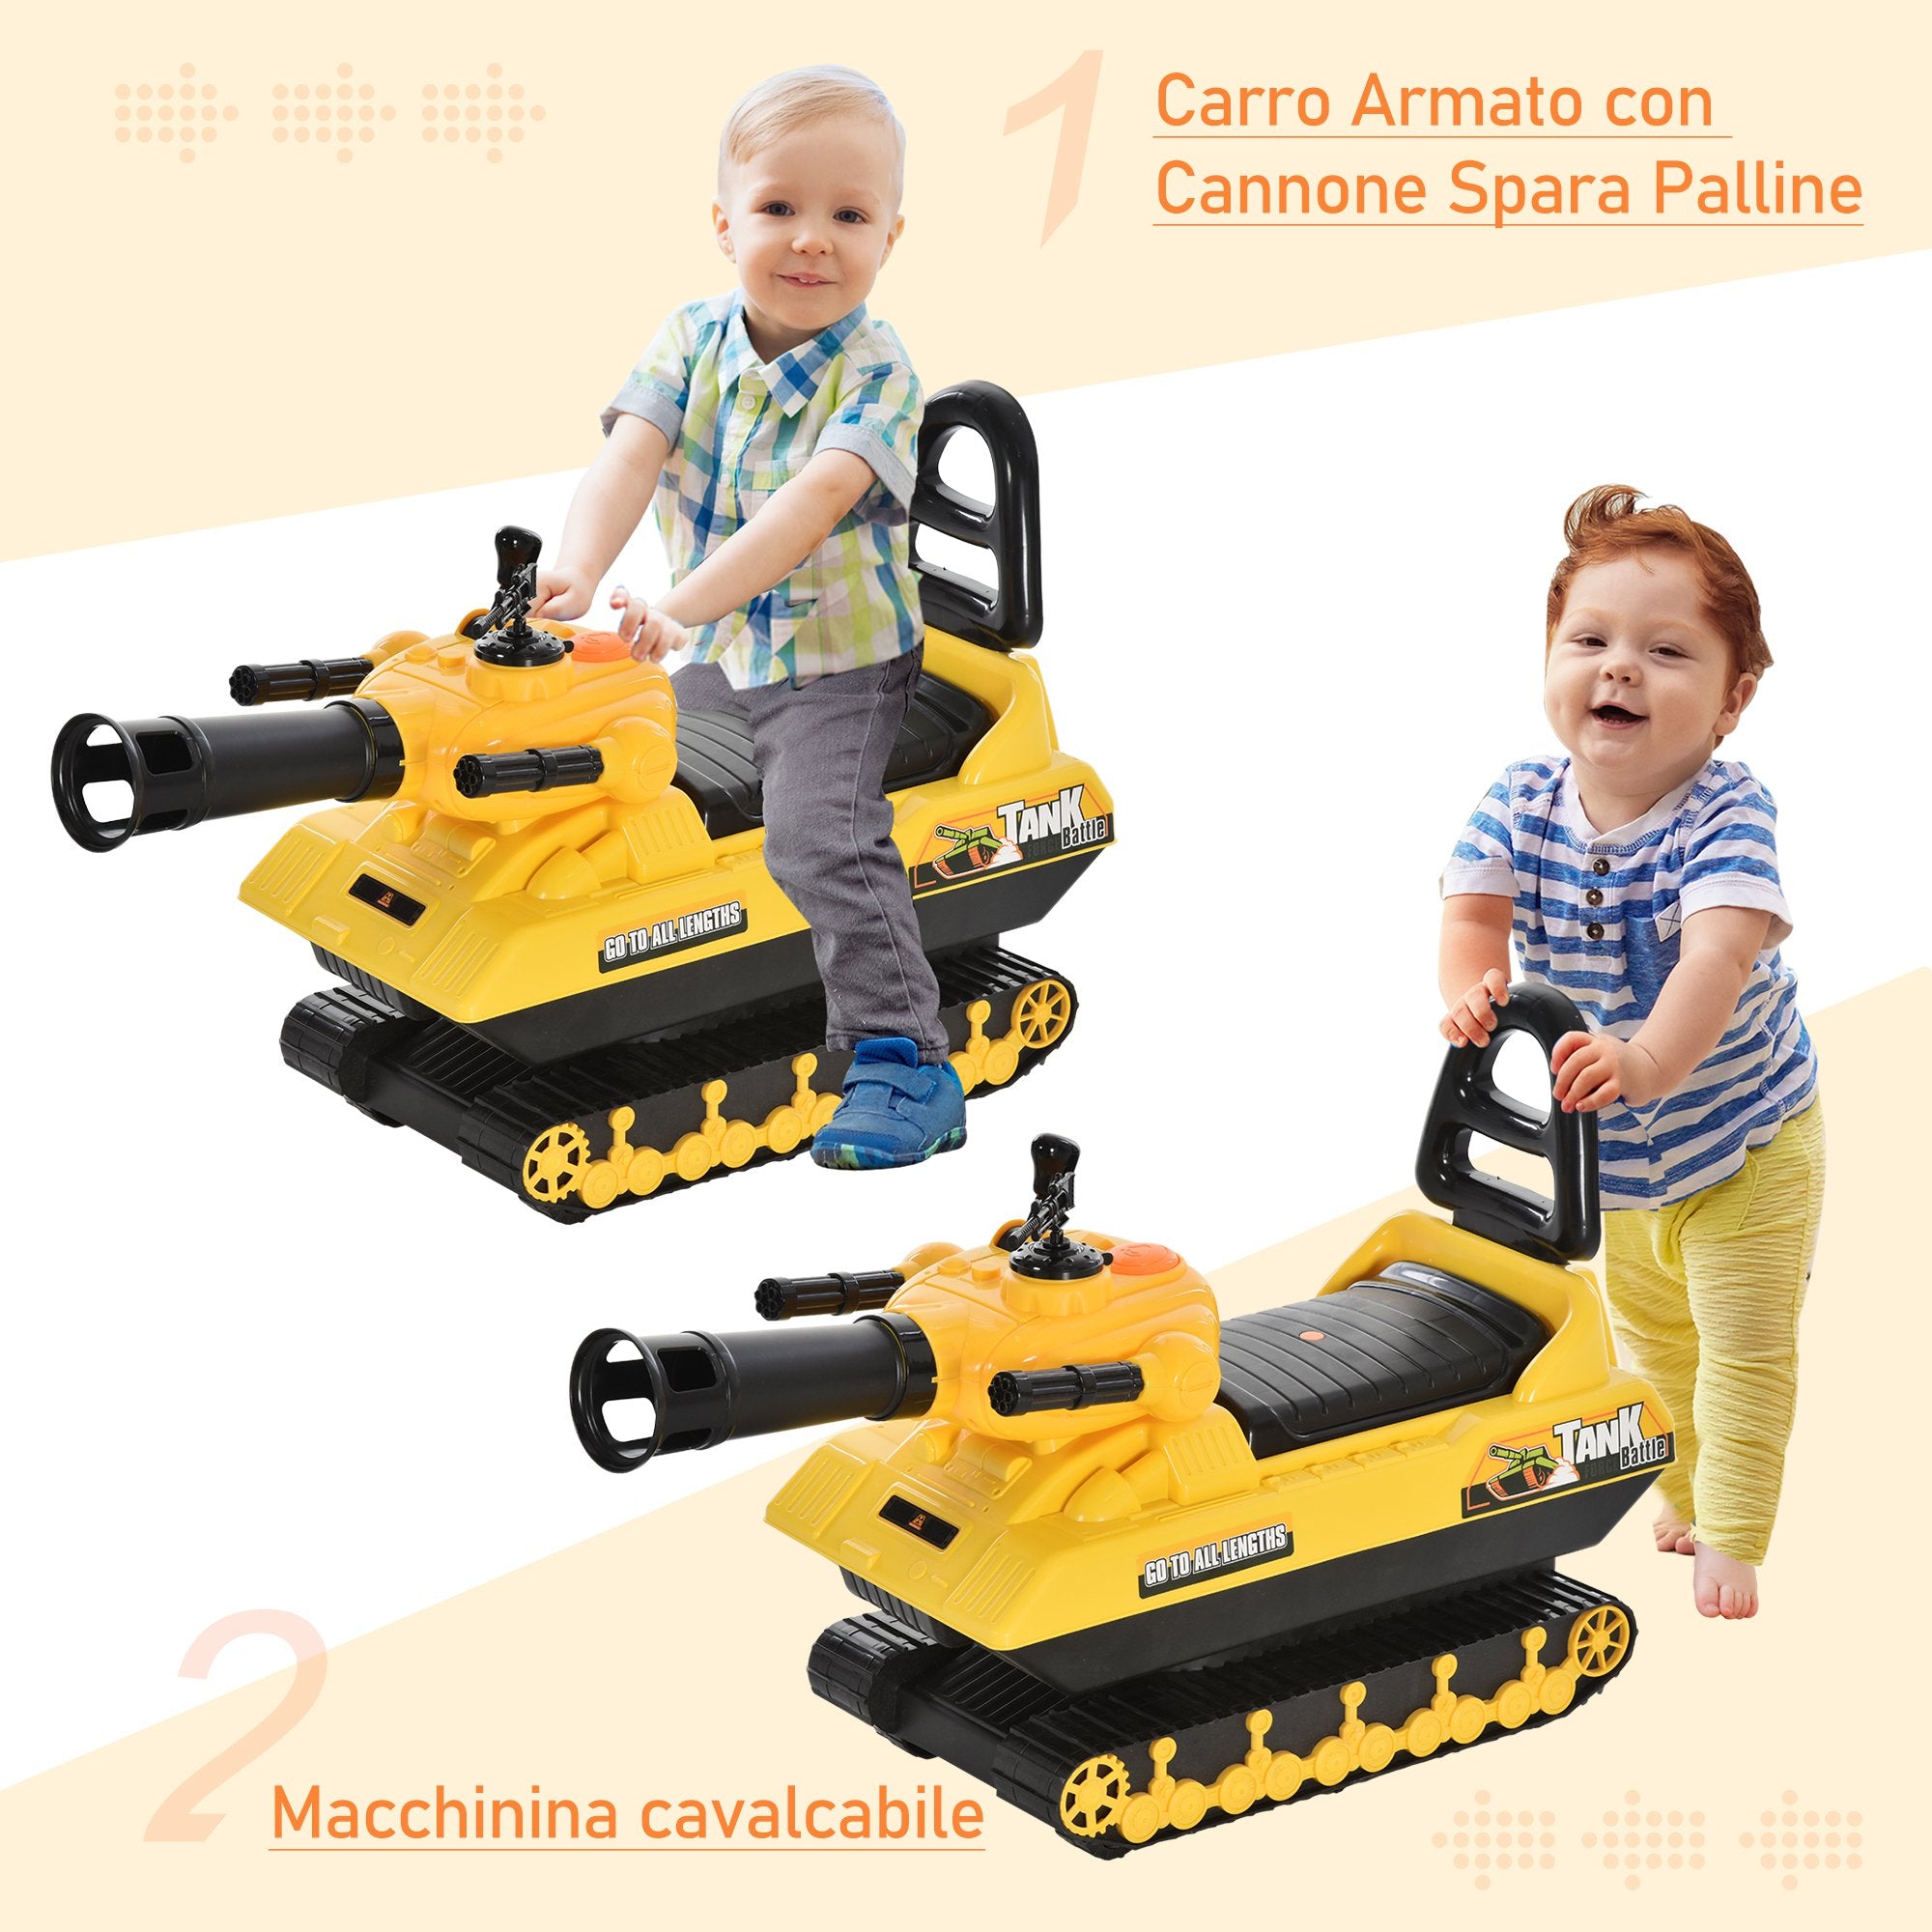 Carro Armato Cavalcabile per Bambini con Cannone Spara Palline Giallo